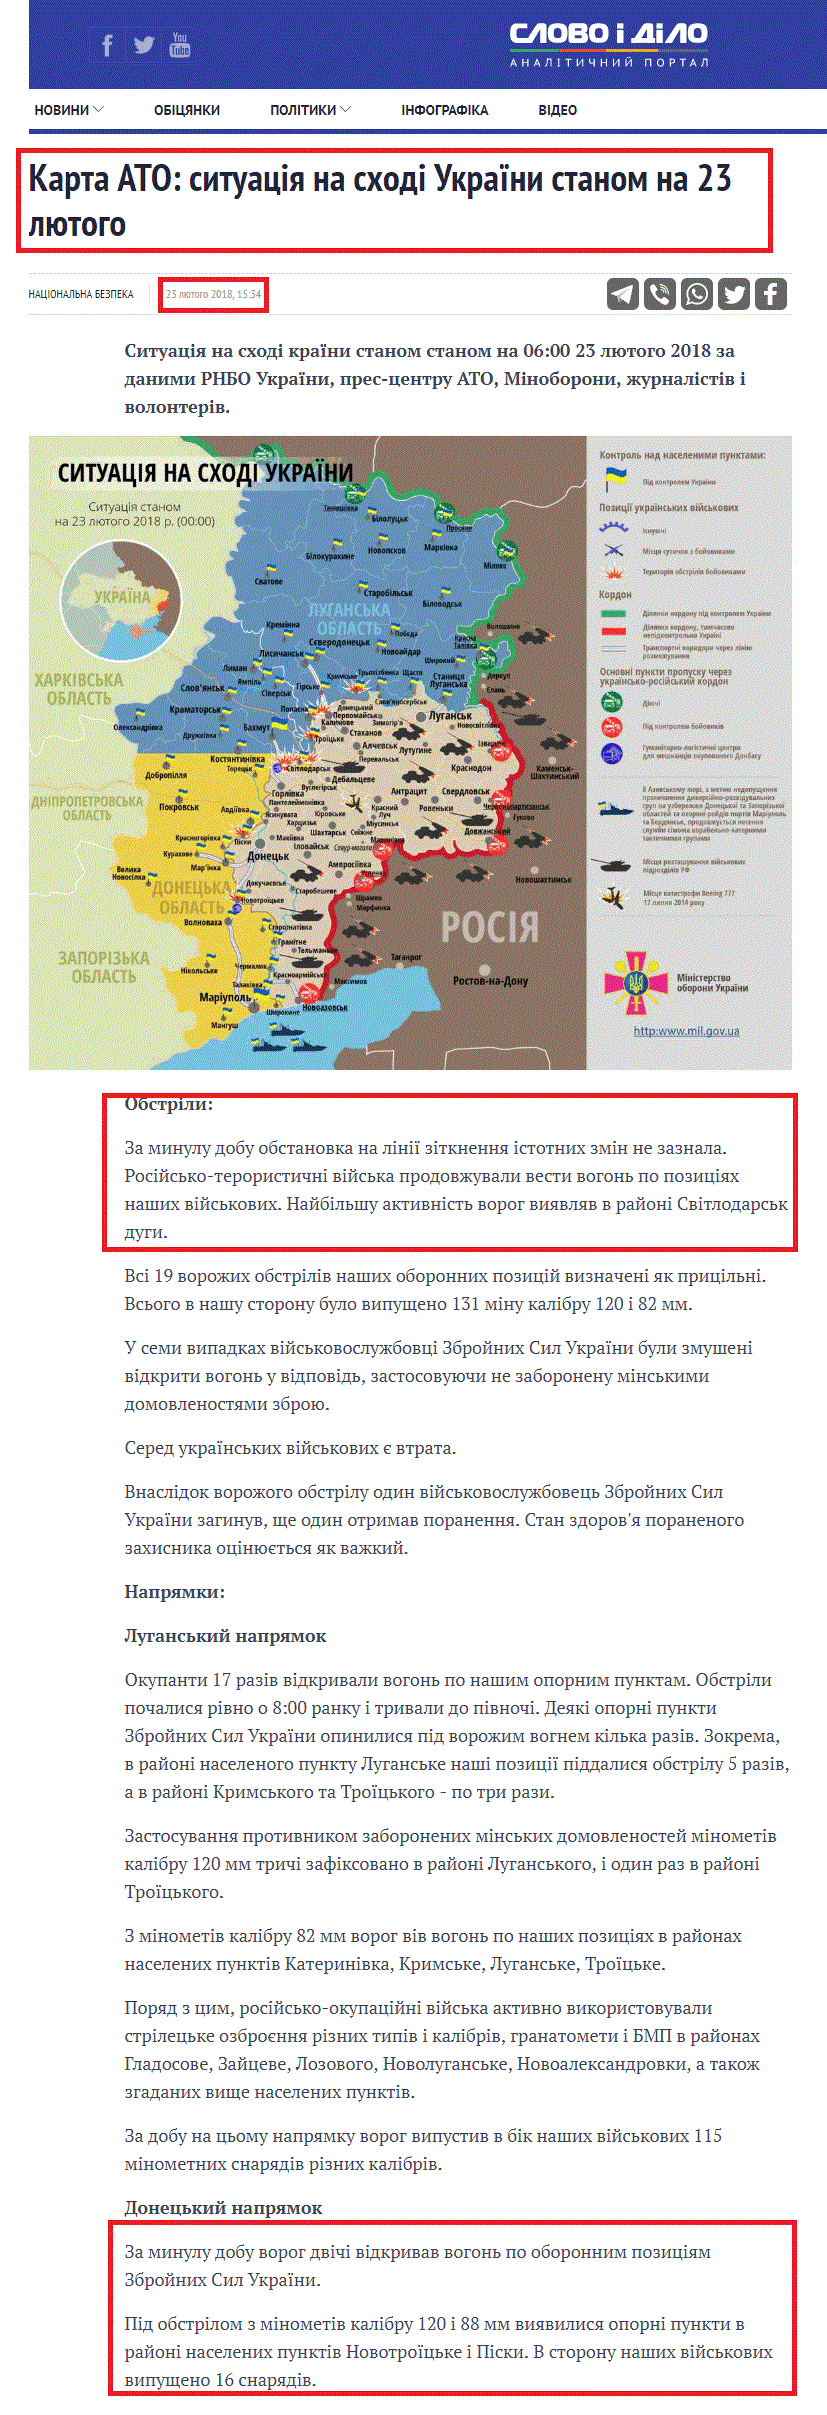 https://ru.slovoidilo.ua/2018/02/23/karta/karta-ato-situaciya-vostoke-ukrainy-23-fevralya